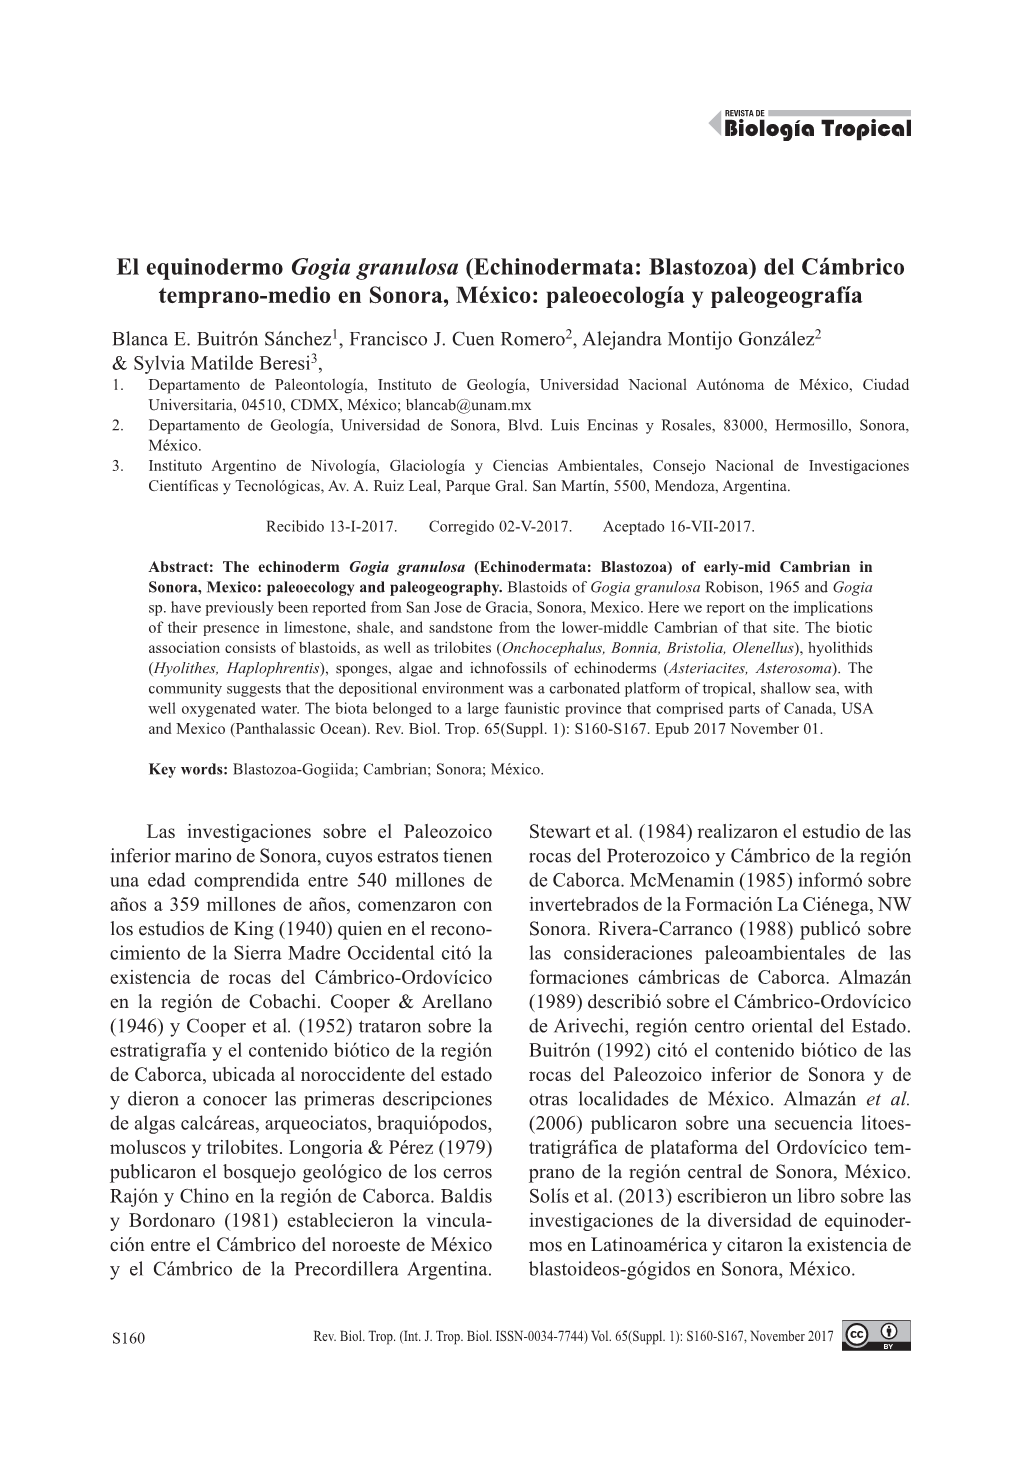 El Equinodermo Gogia Granulosa (Echinodermata: Blastozoa) Del Cámbrico Temprano-Medio En Sonora, México: Paleoecología Y Paleogeografía